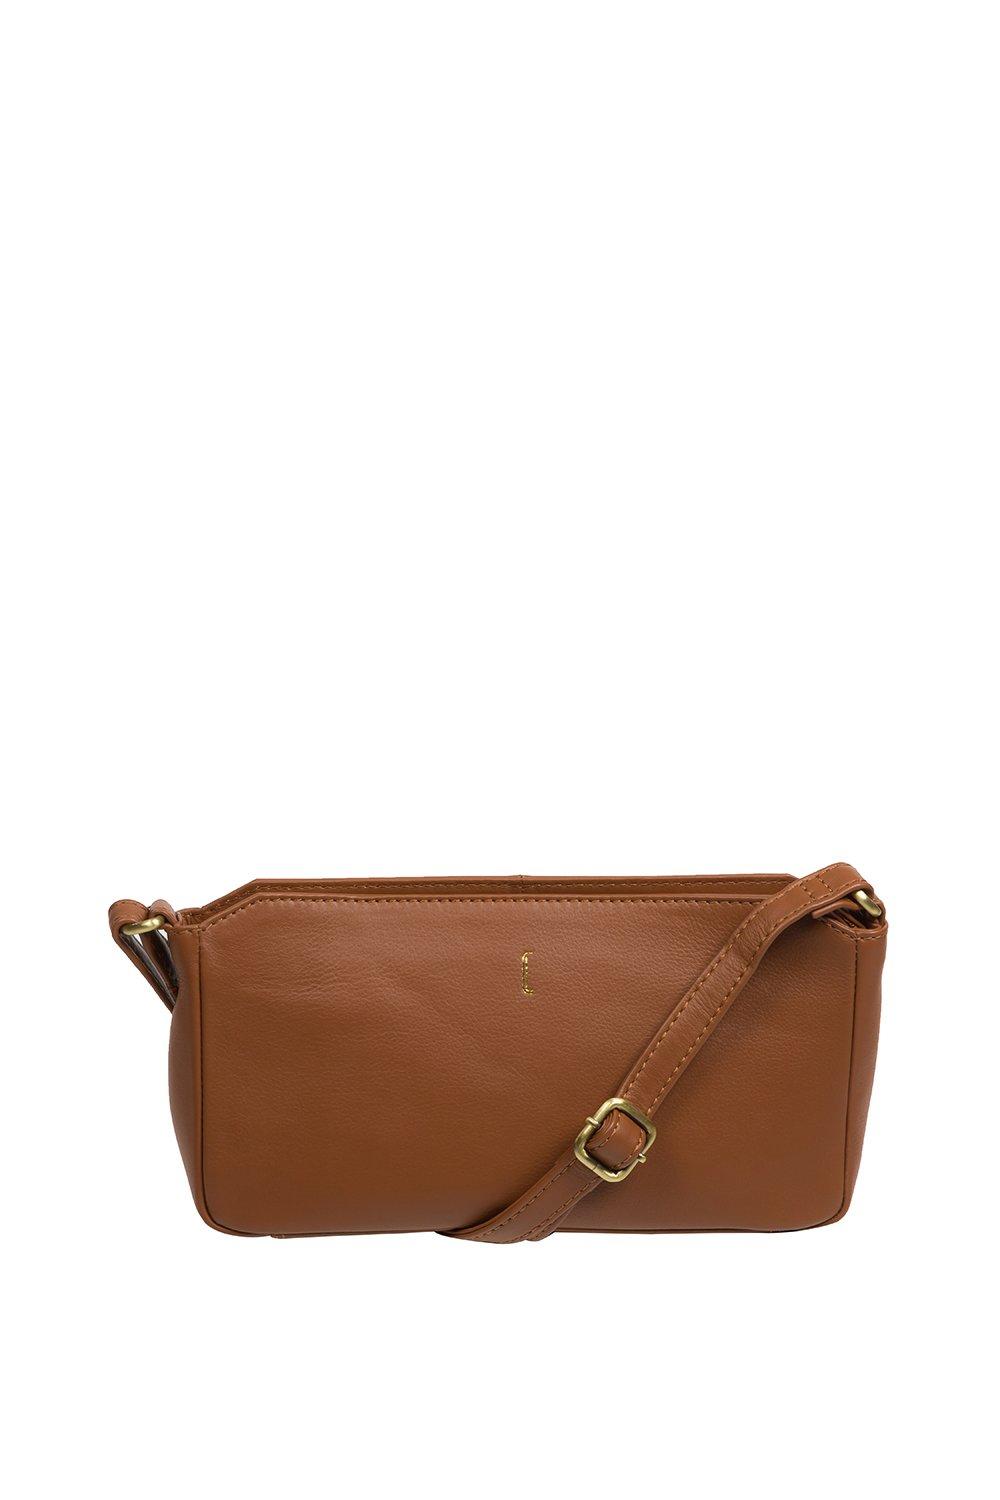 Кожаная сумка через плечо 'Christina' Cultured London, коричневый